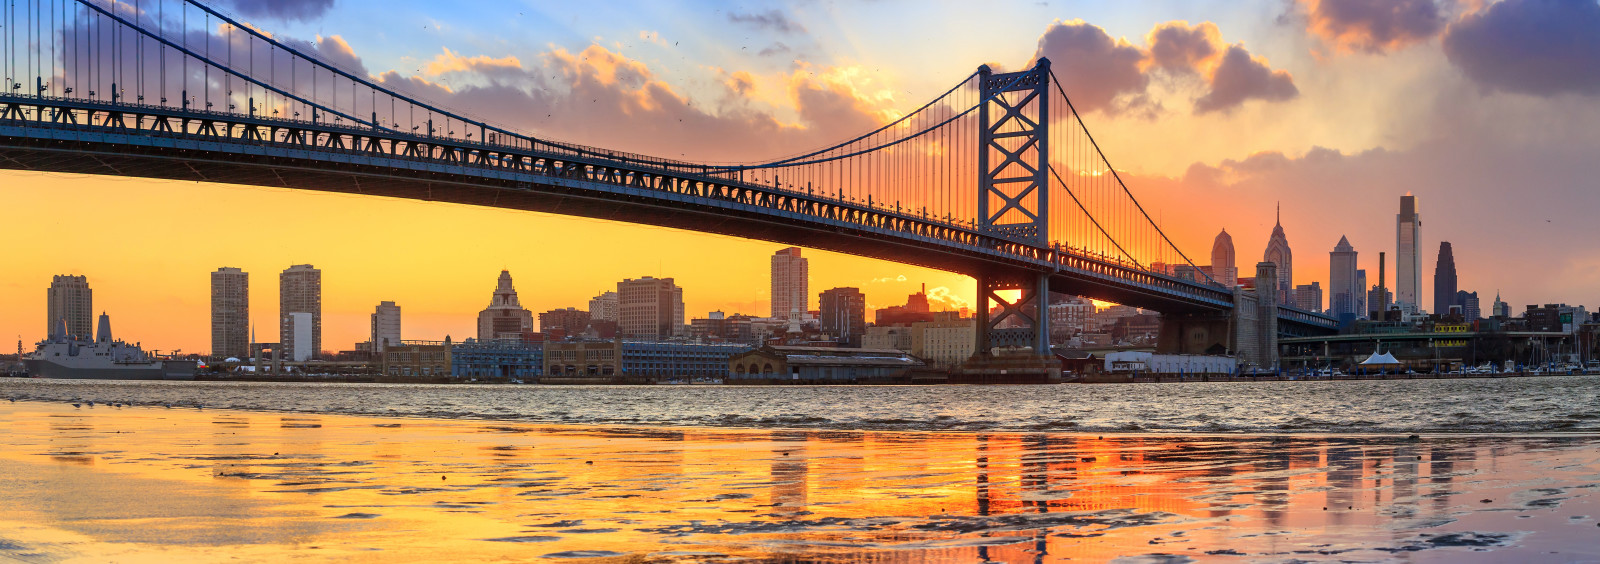 con sông, Cầu, bức tranh toàn cảnh, Pennsylvania, Philadelphia, PA, sông Del biết, cầu Benjamin-Franklin